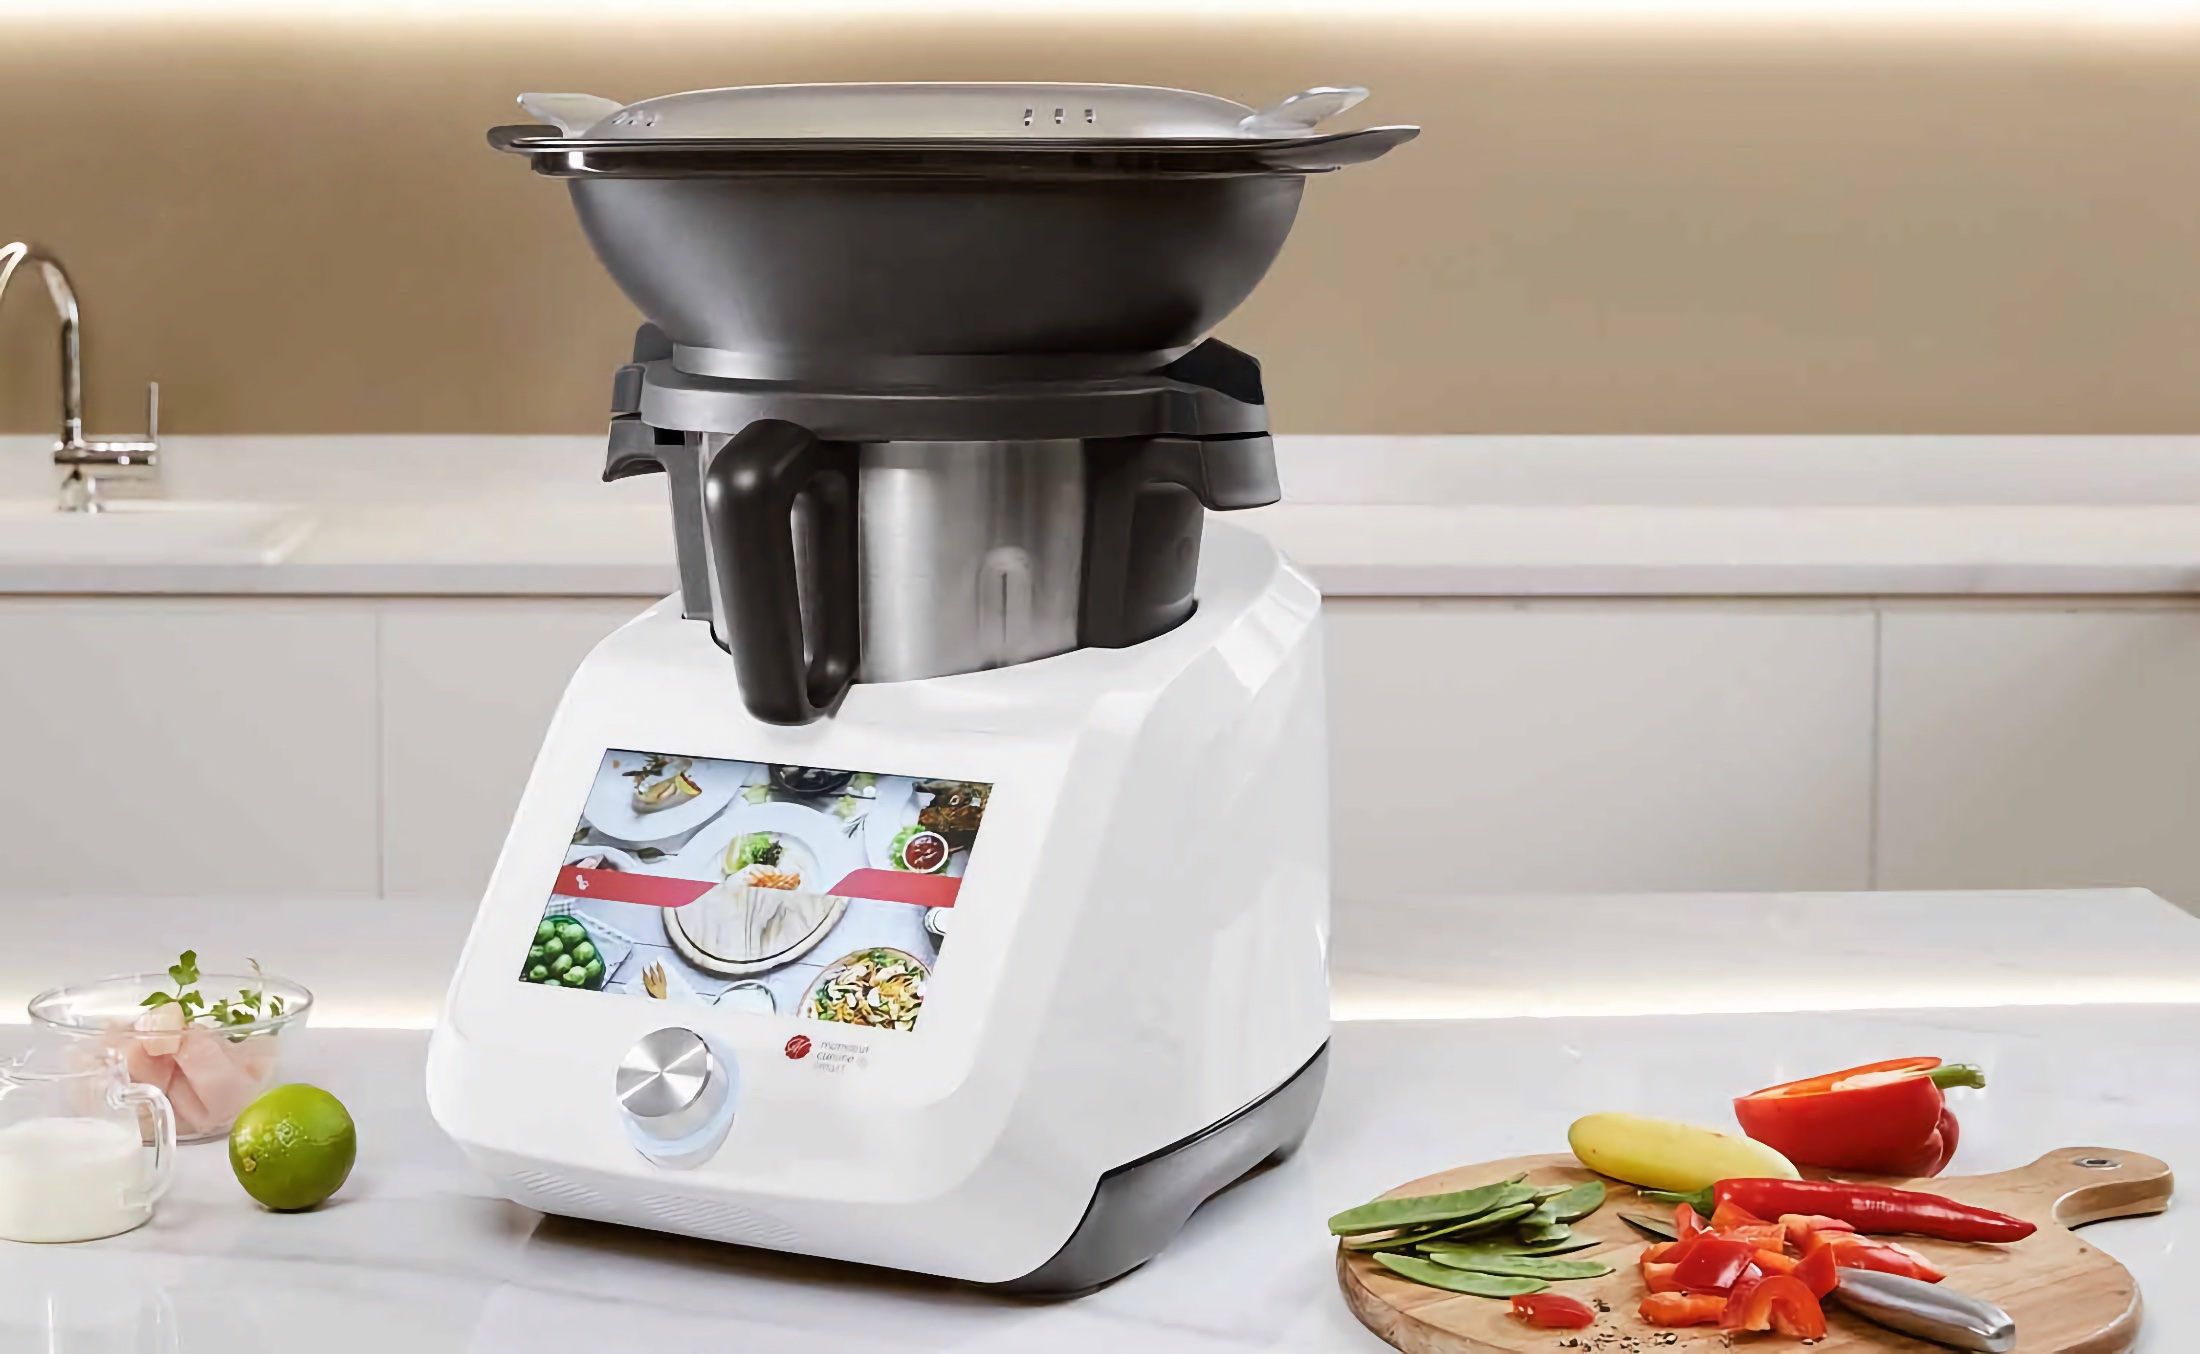 El robot de cocina Taurus Mycook Touch, una de las mejores alternativas a  Thermomix, está a precio mínimo histórico en